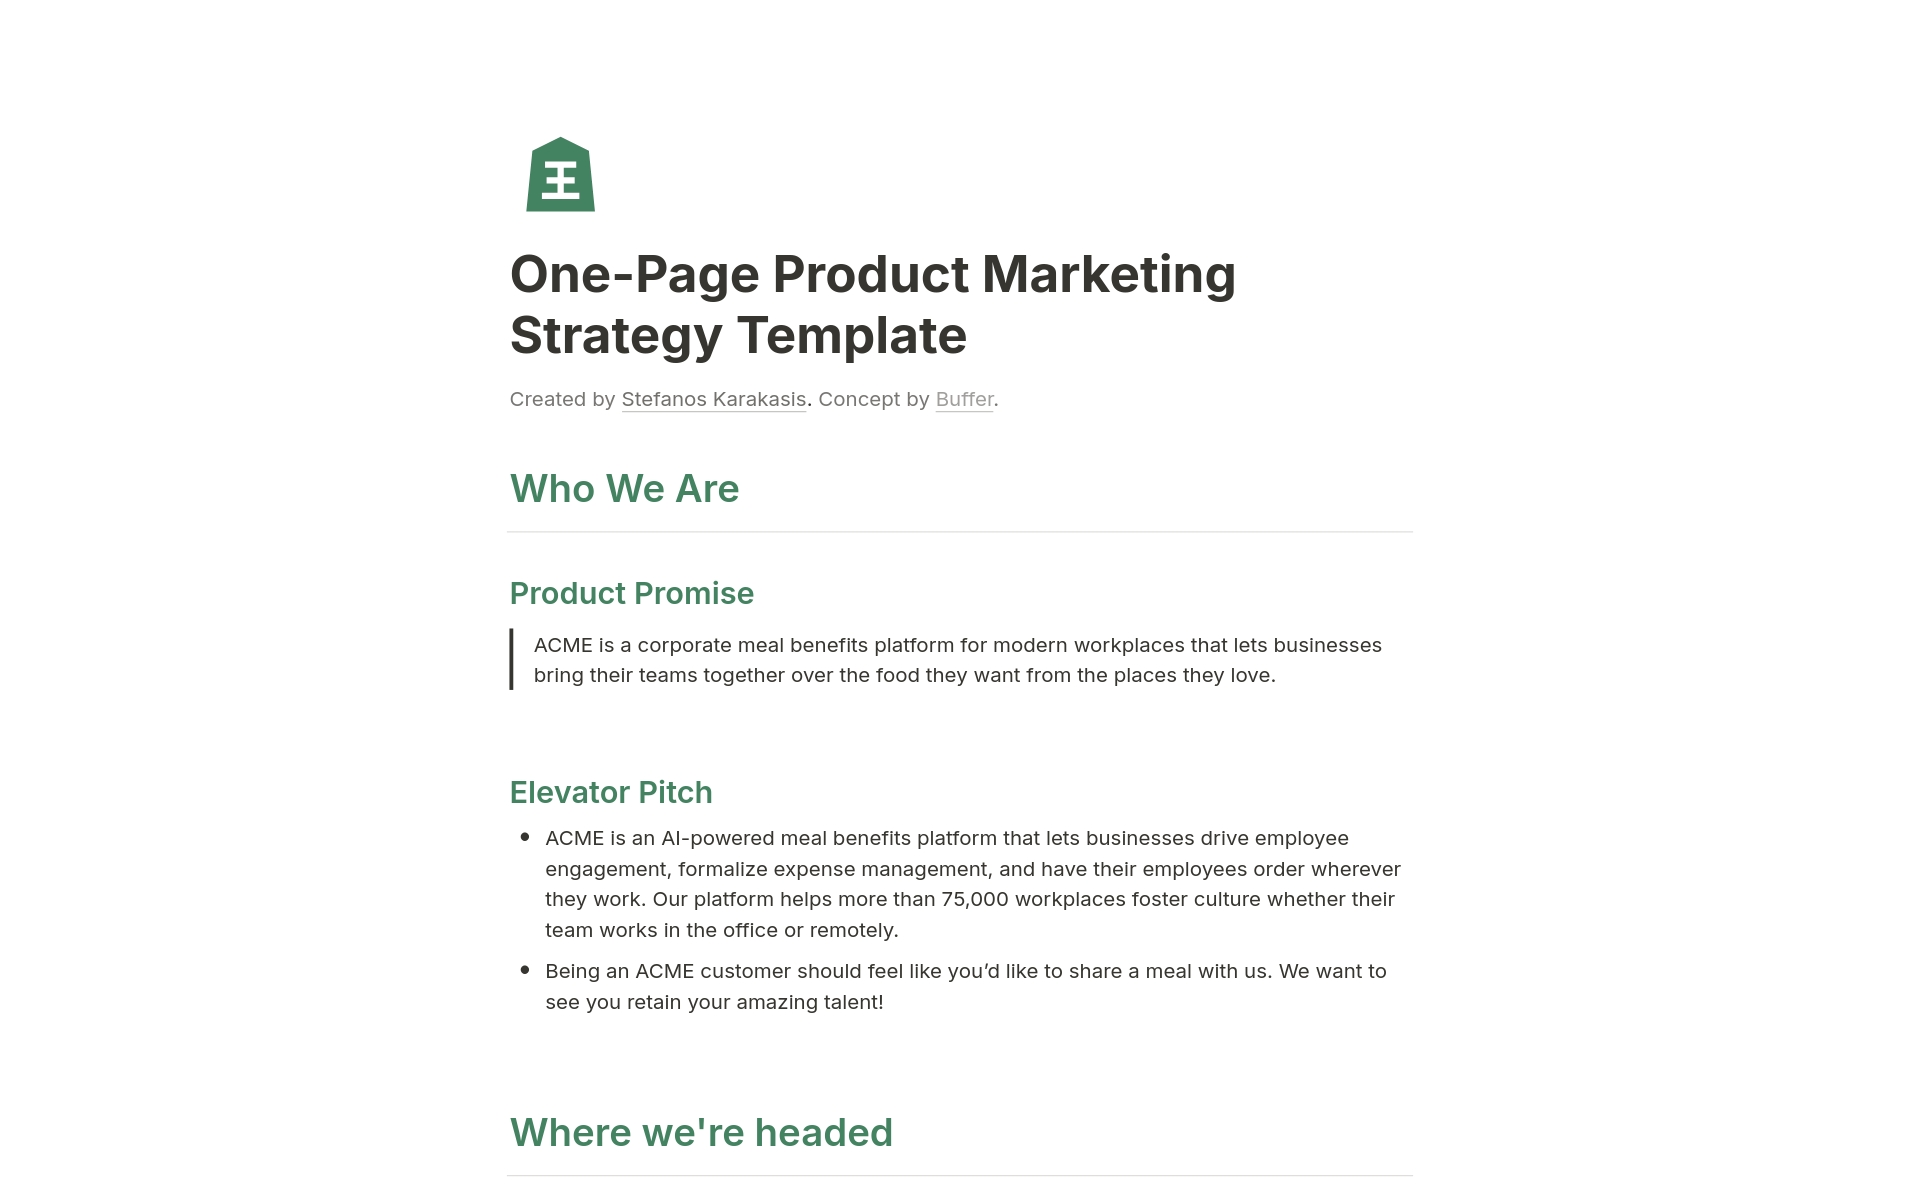 Uma prévia do modelo para One-Page Product Marketing Strategy